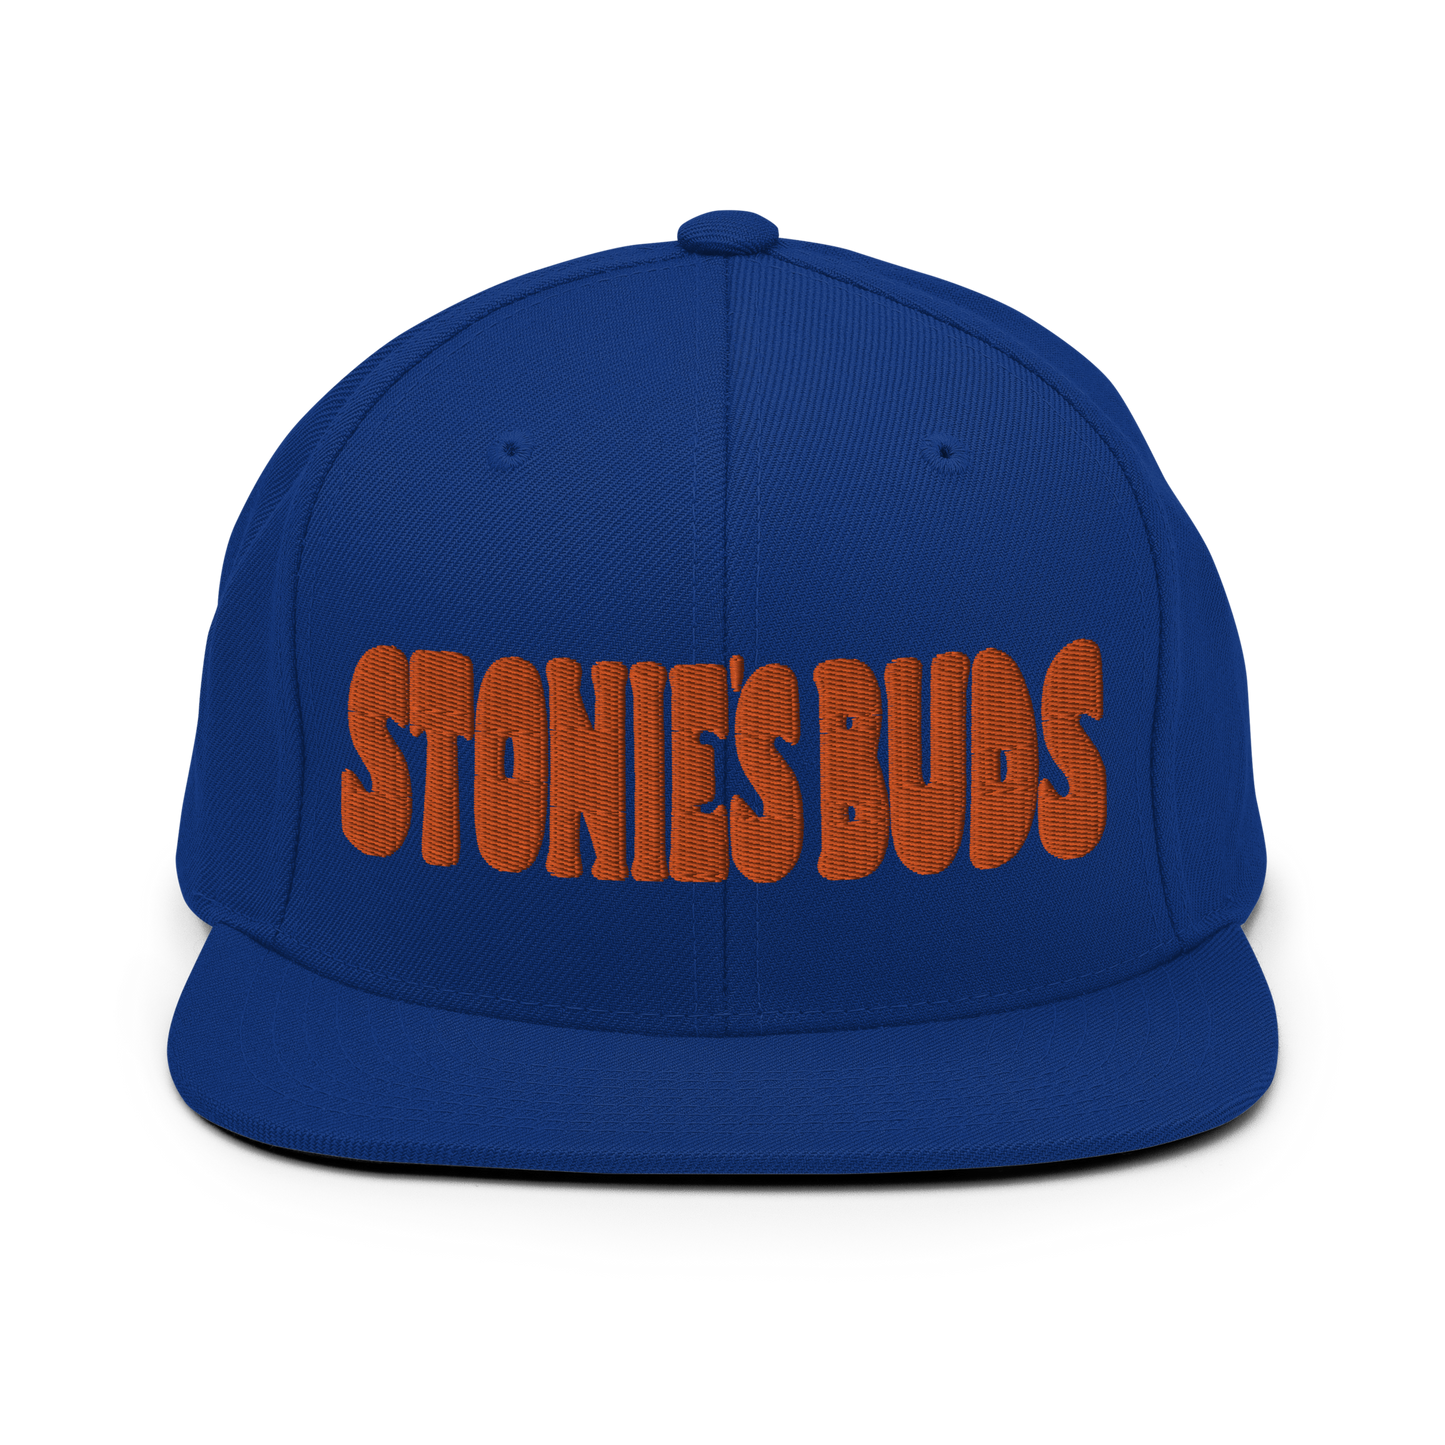 Stonie's Buds Snapback